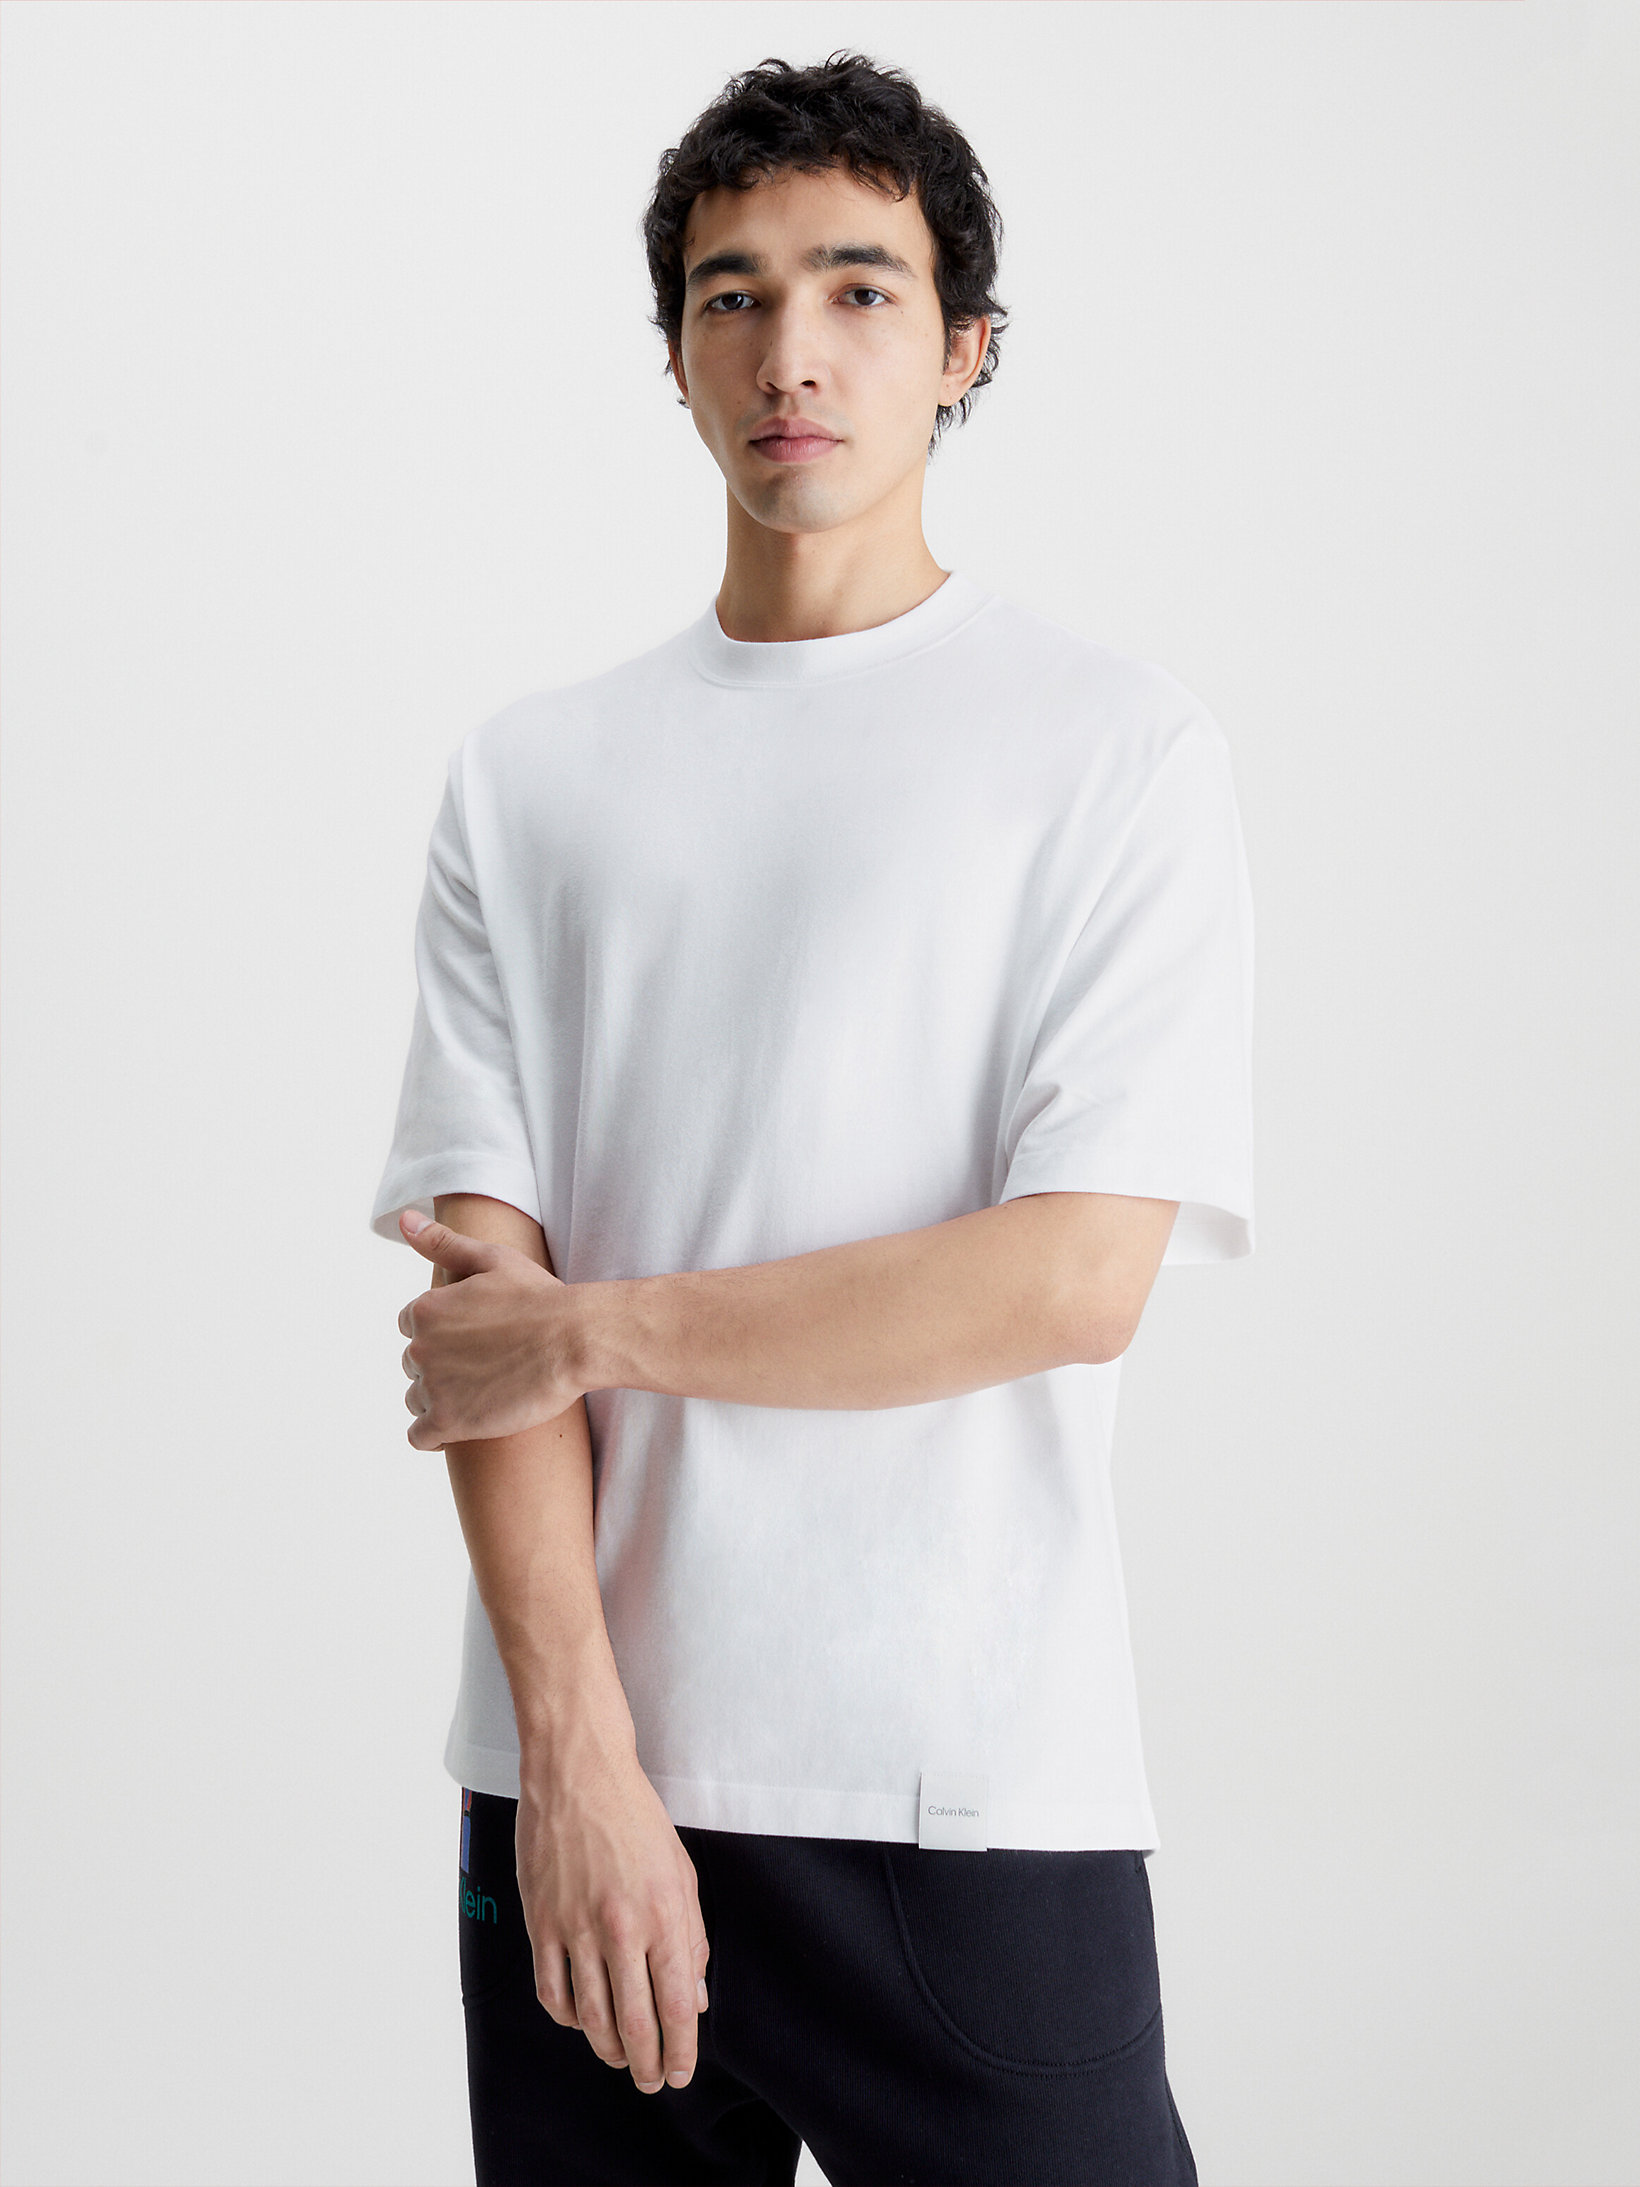 Brilliant White > Lässiges Unisex-T-Shirt – CK Standards > undefined unisex - Calvin Klein